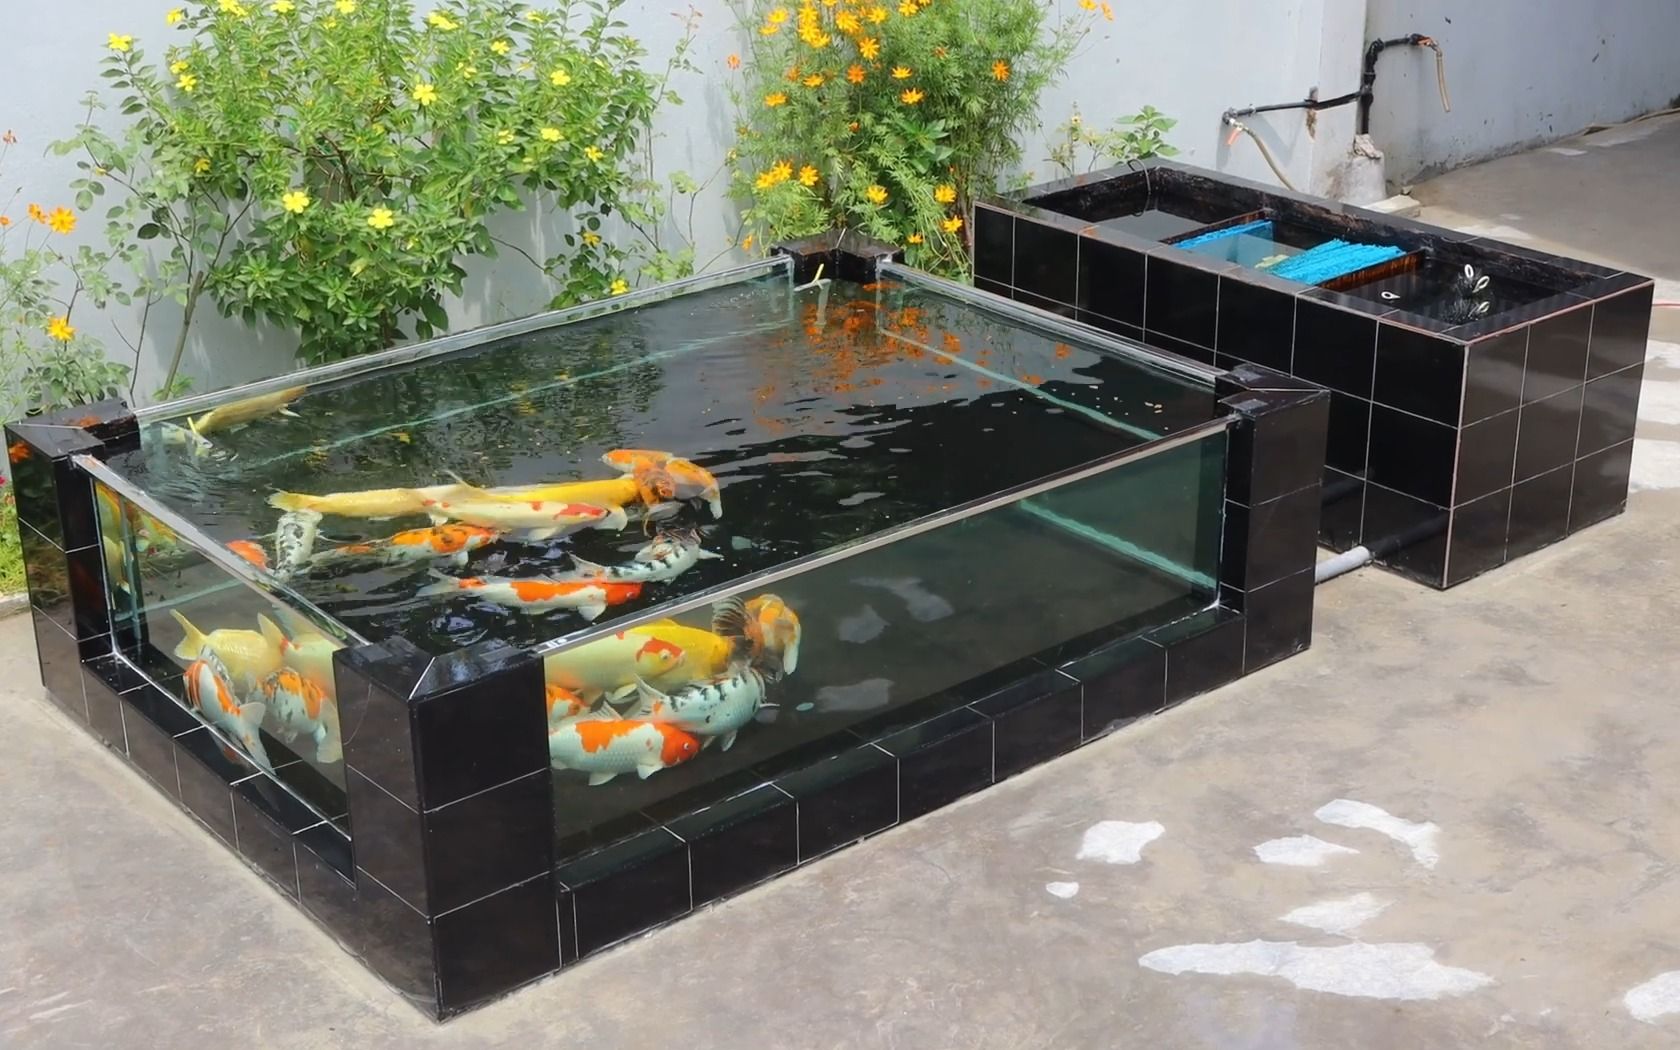 目前最流行的透明玻璃锦鲤鱼池建造全过程,一学就会,有地就行